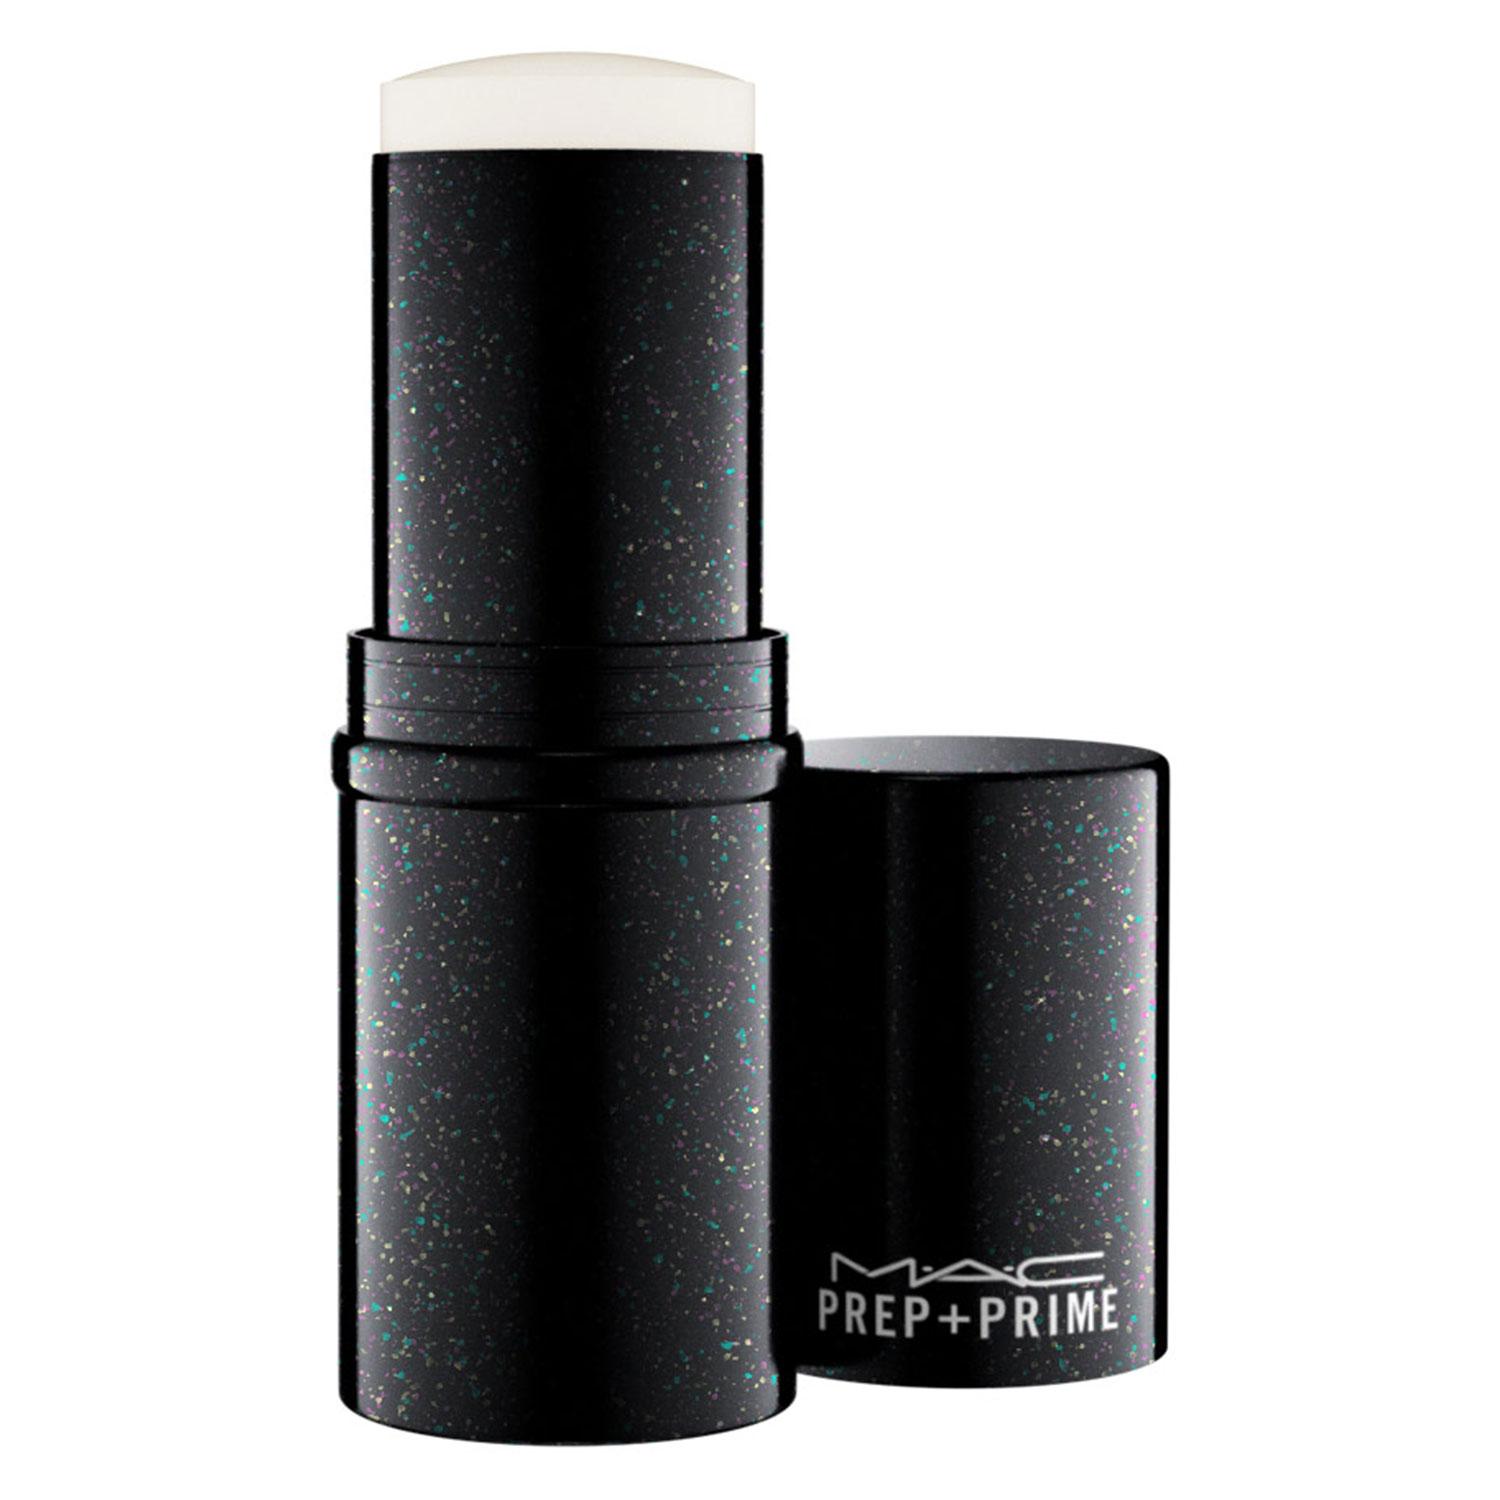 Prep+Prime - Pore Refiner Stick